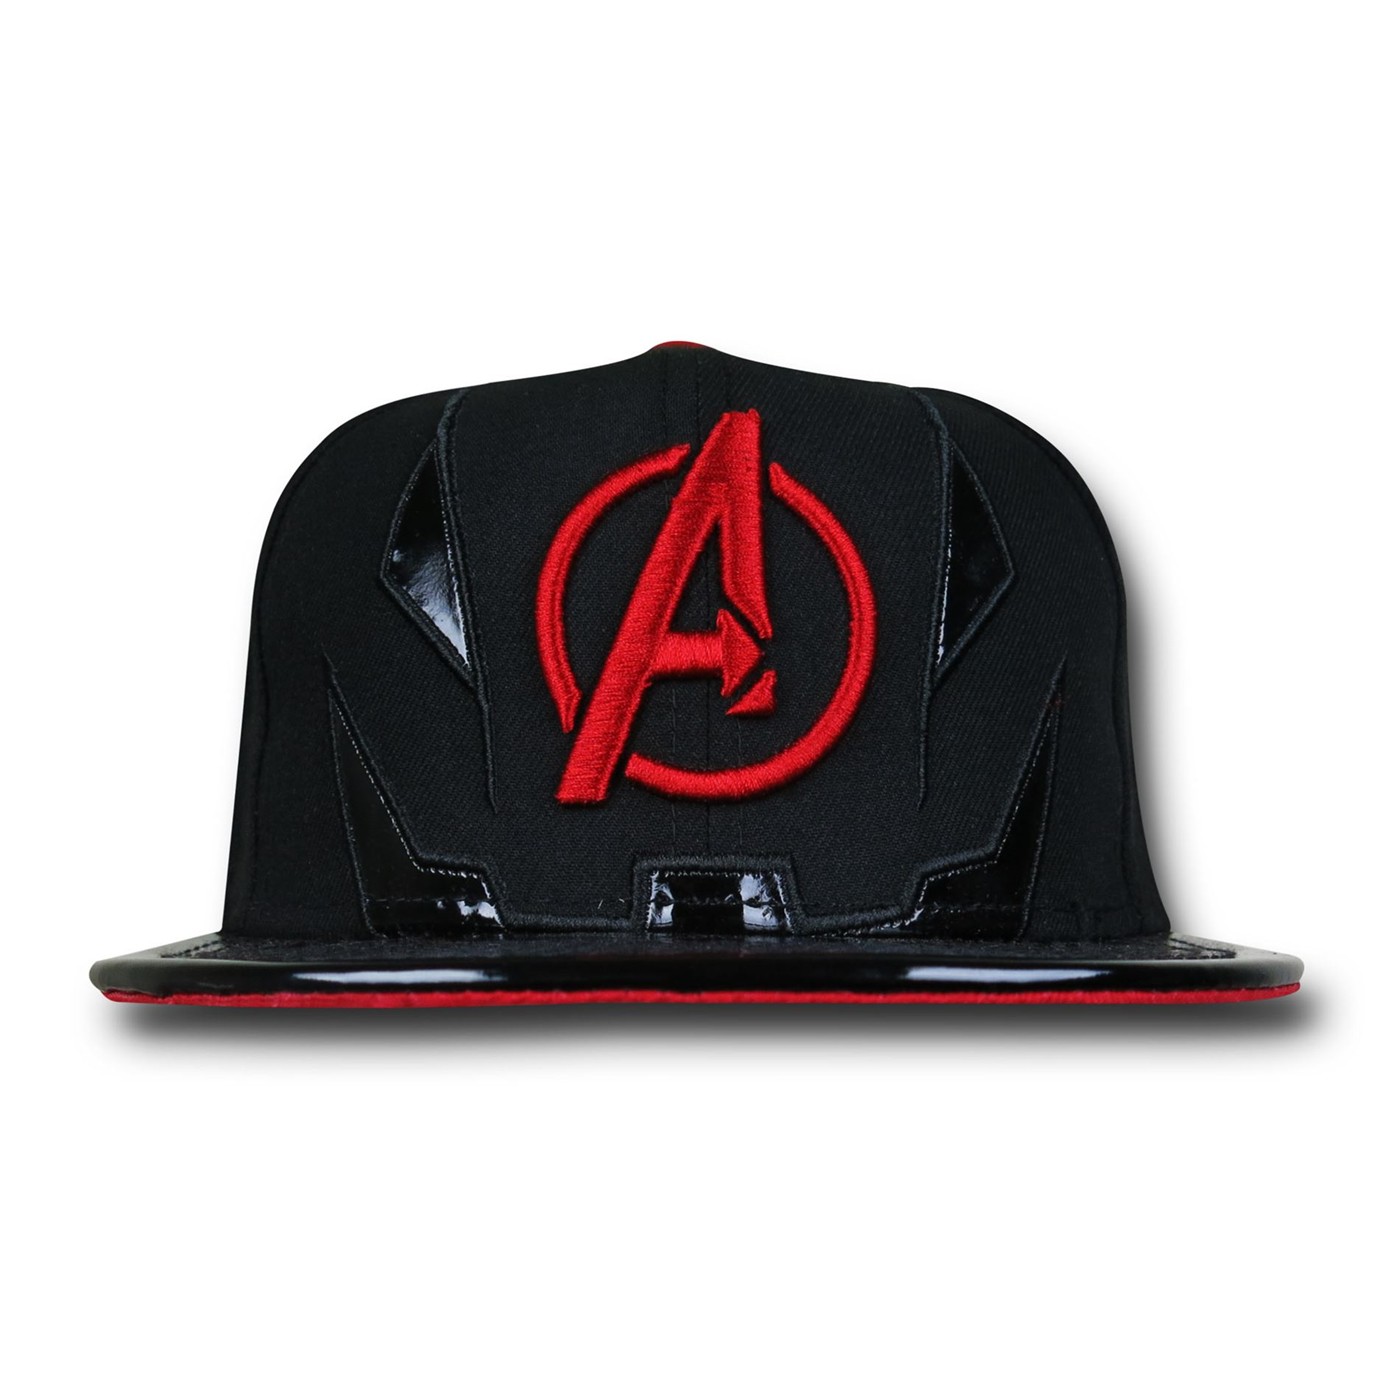 Avengers AoU Tonal Tron 59Fifty Cap